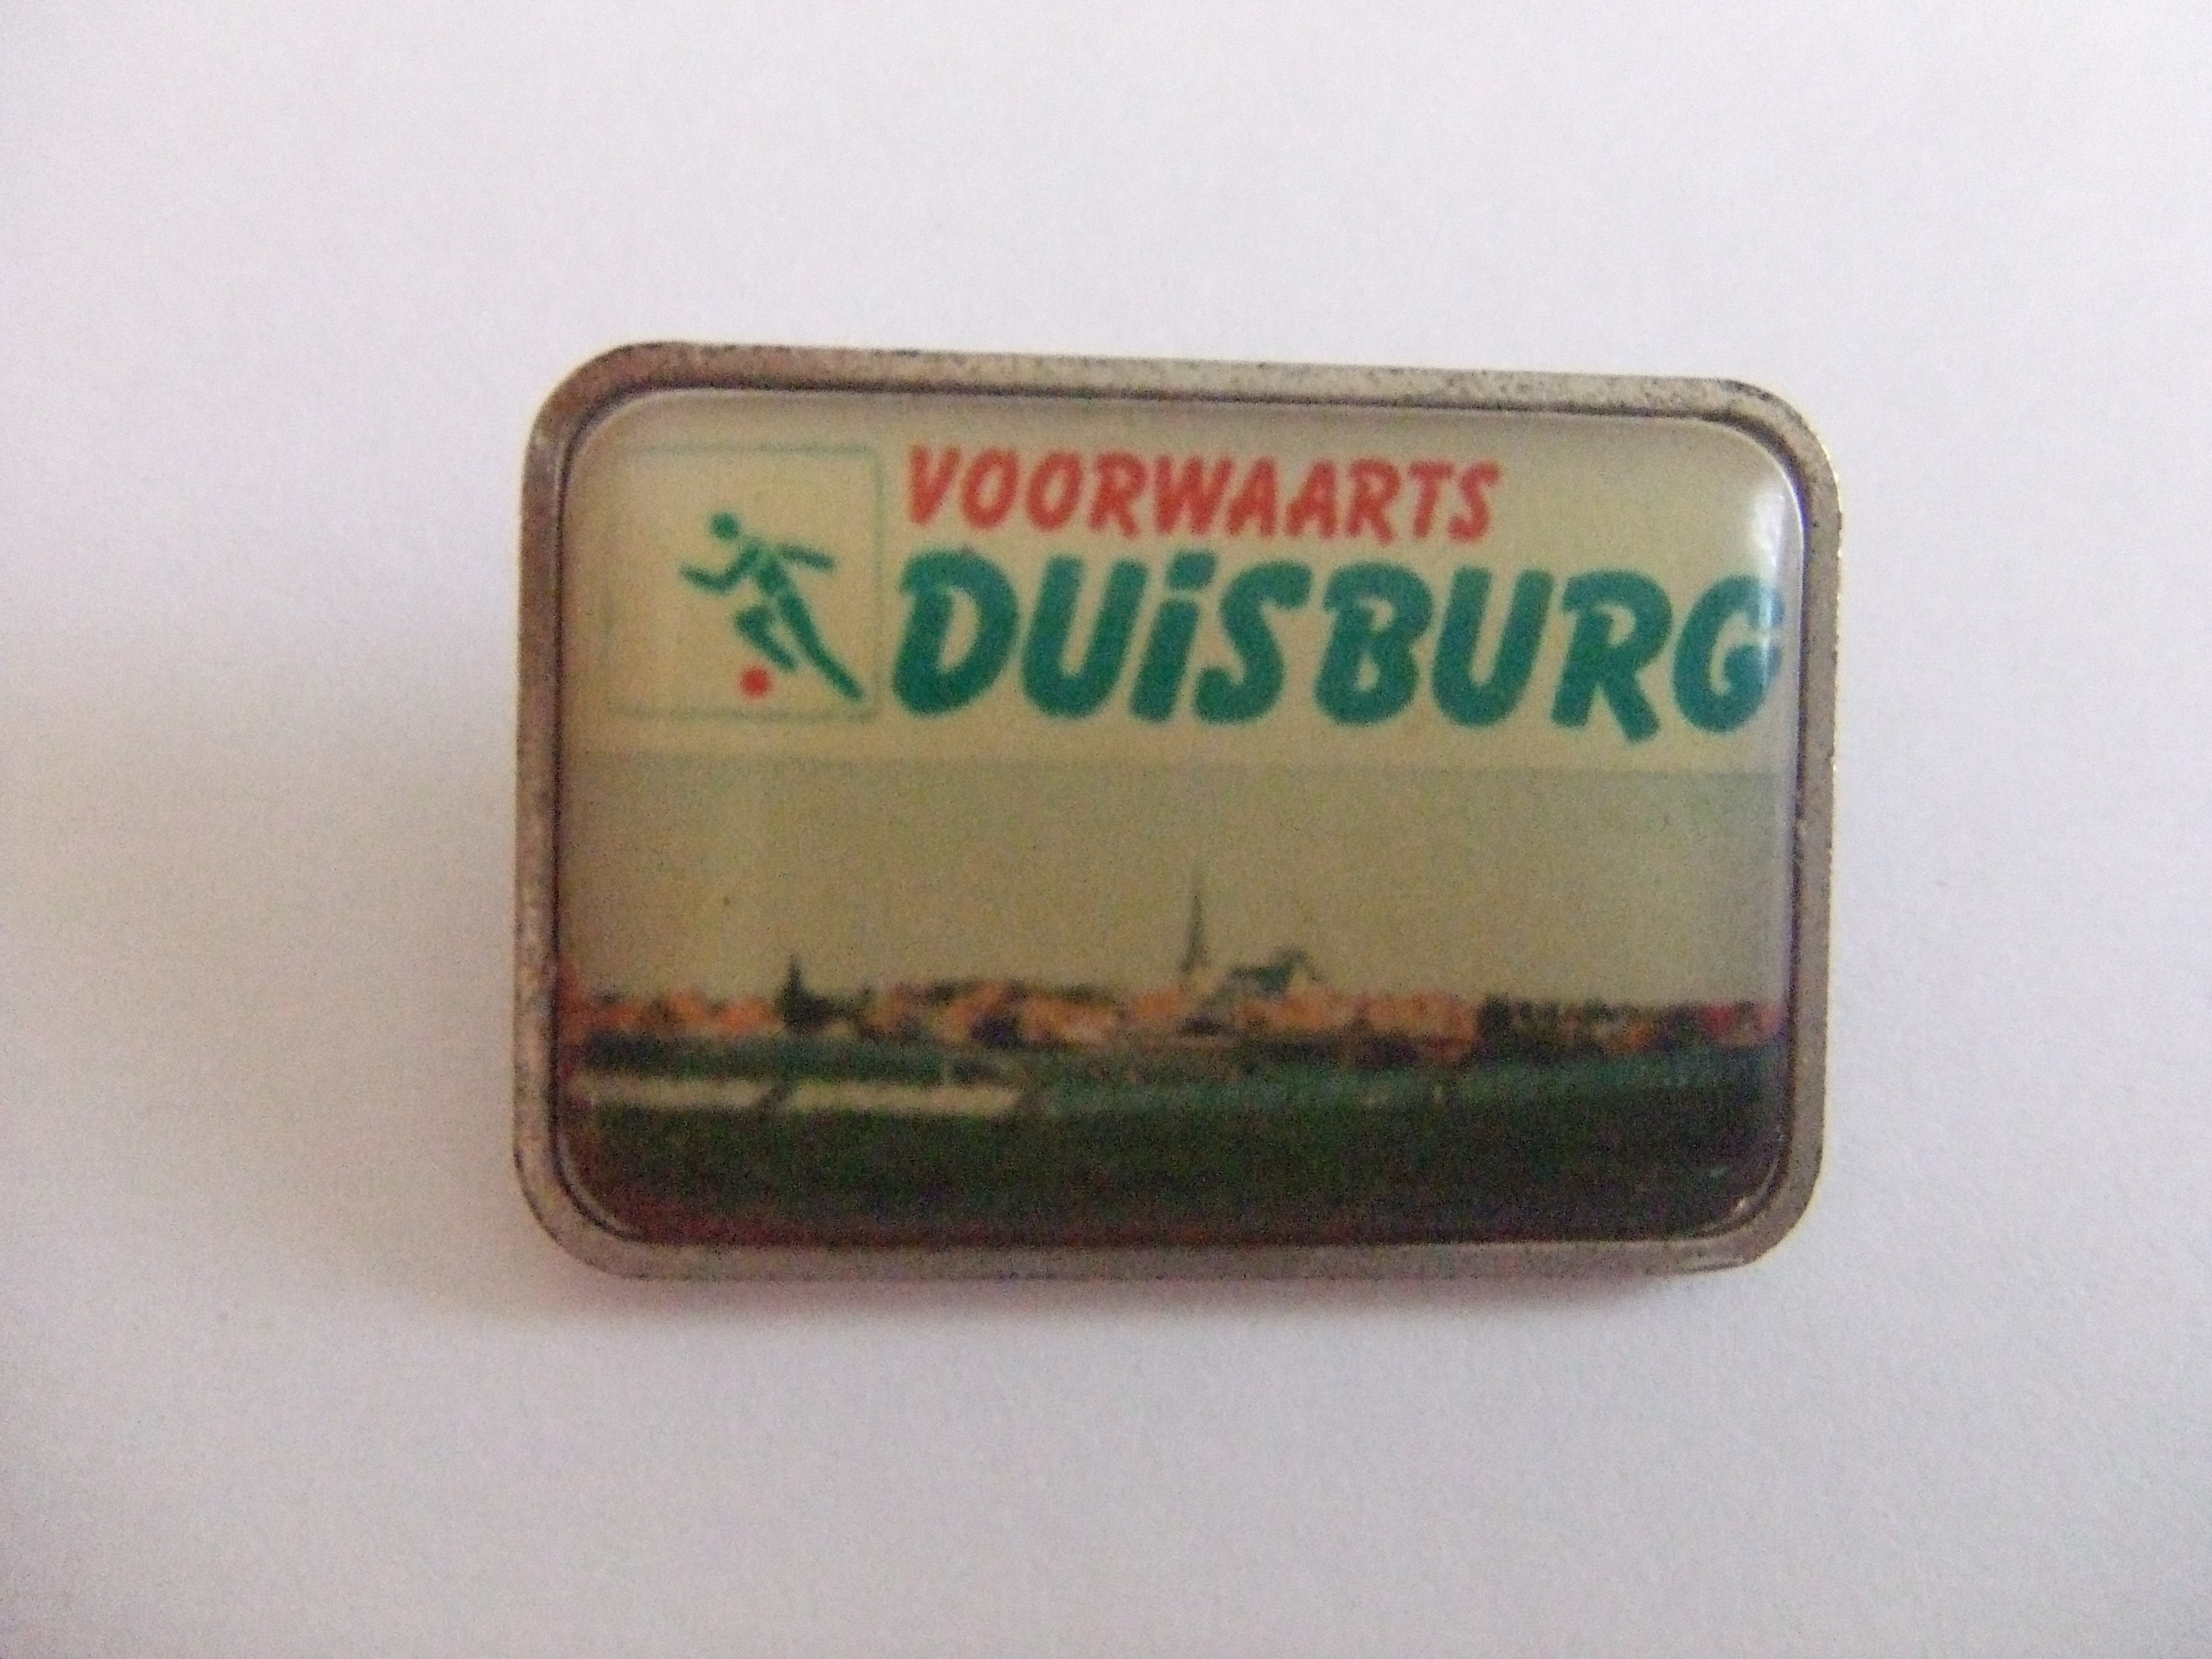 Voorwaarts Duisburg